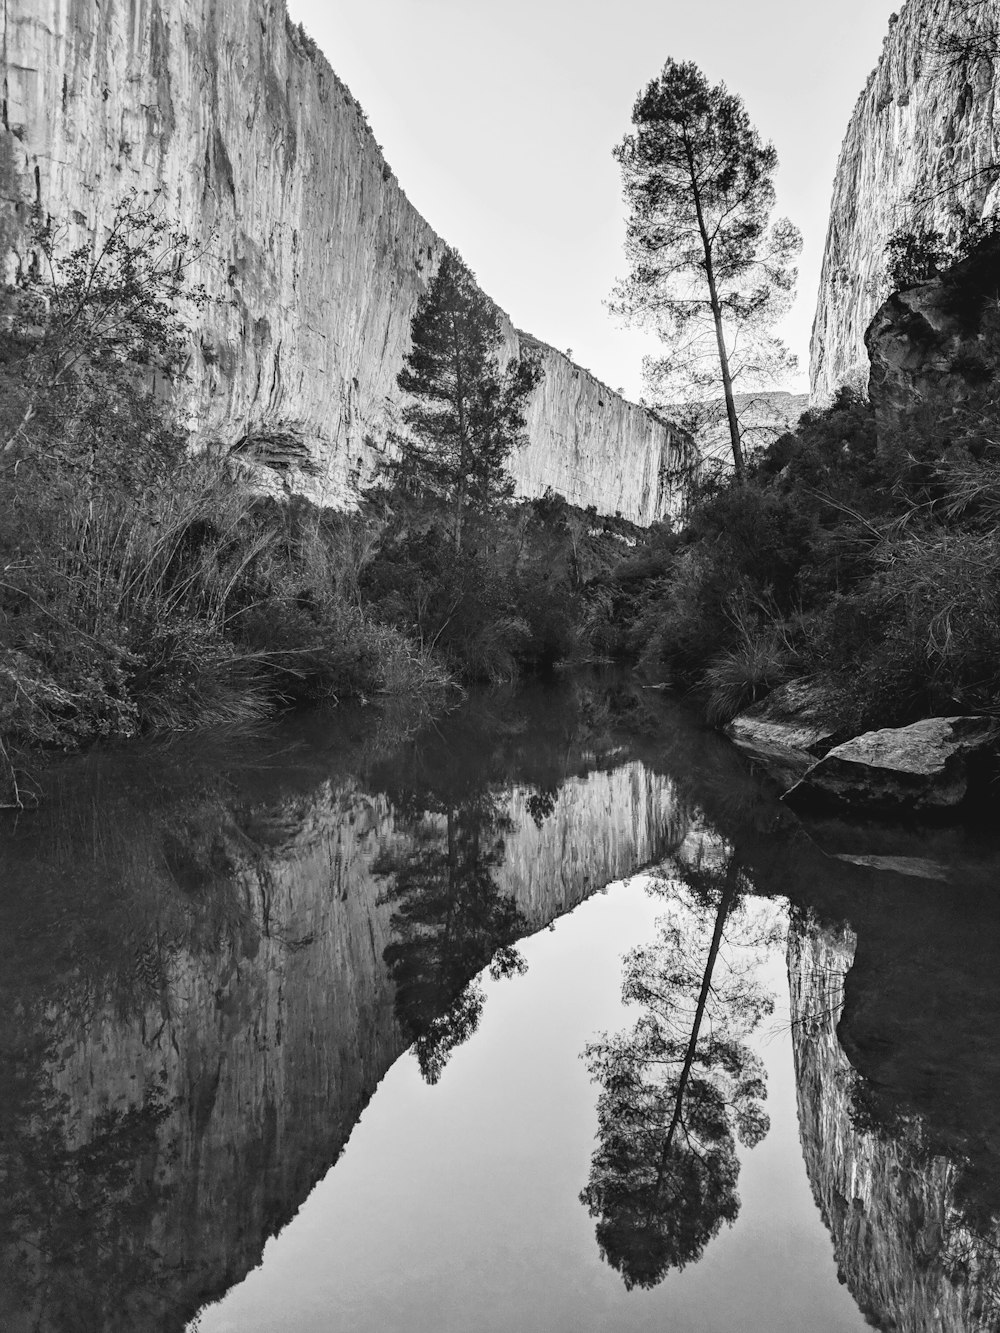 fotografia in scala di grigi dello specchio d'acqua e della scogliera di montagna